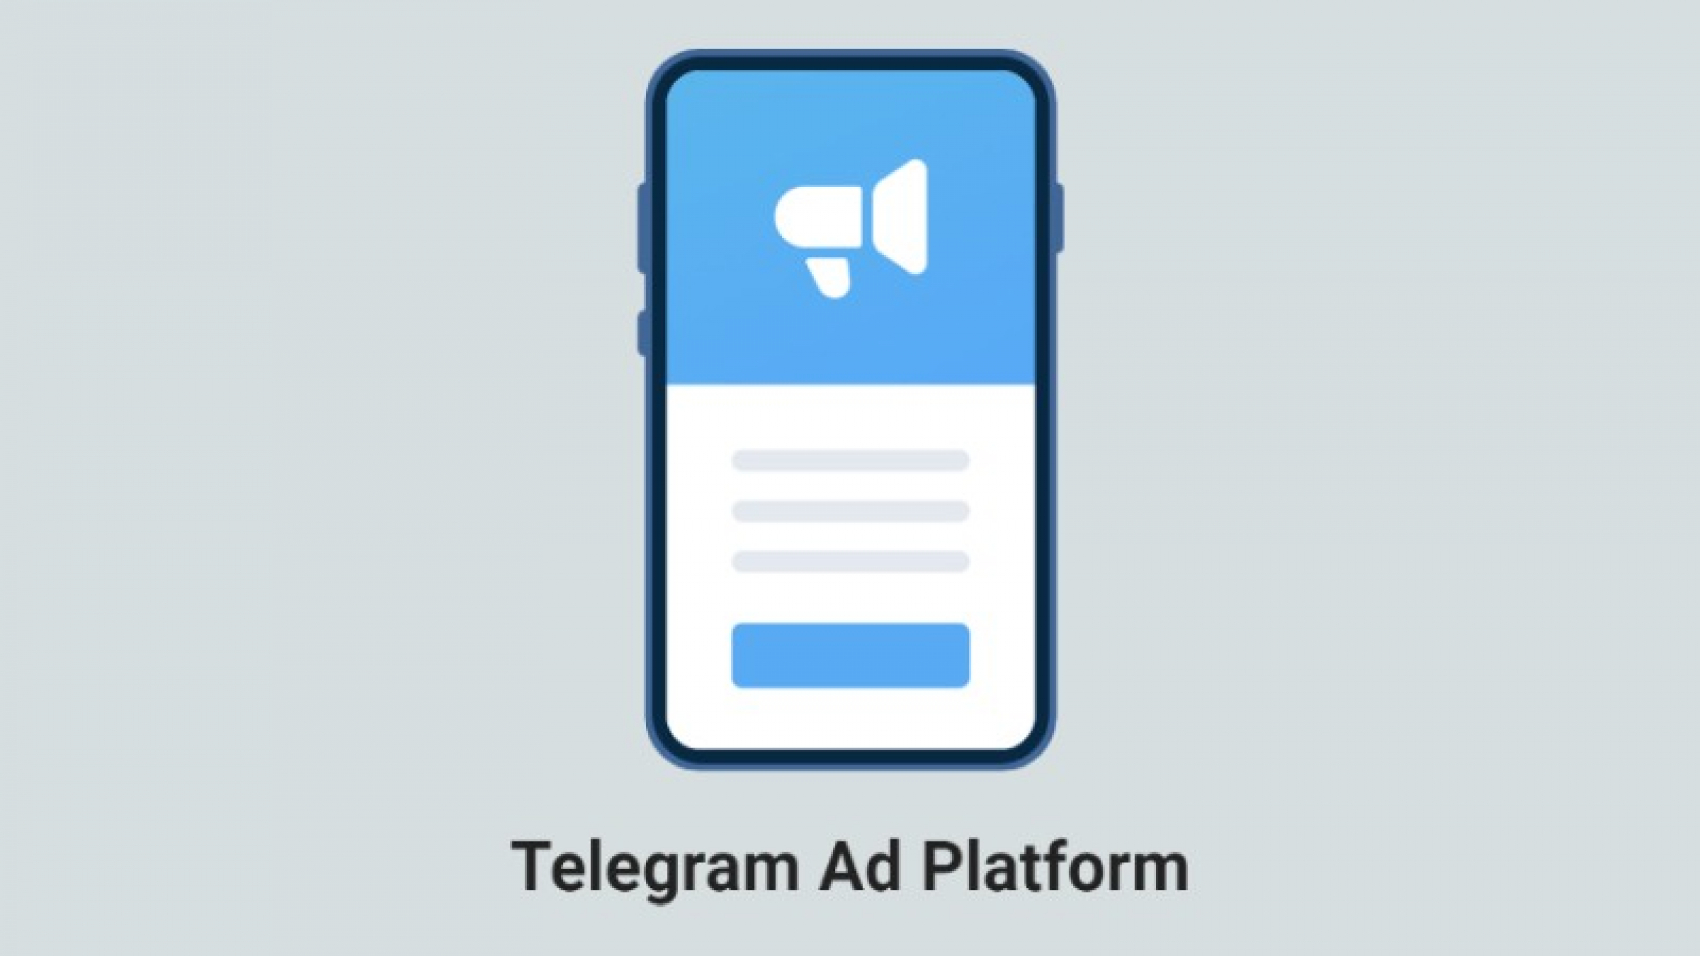 Telegram представил собственную рекламную платформу